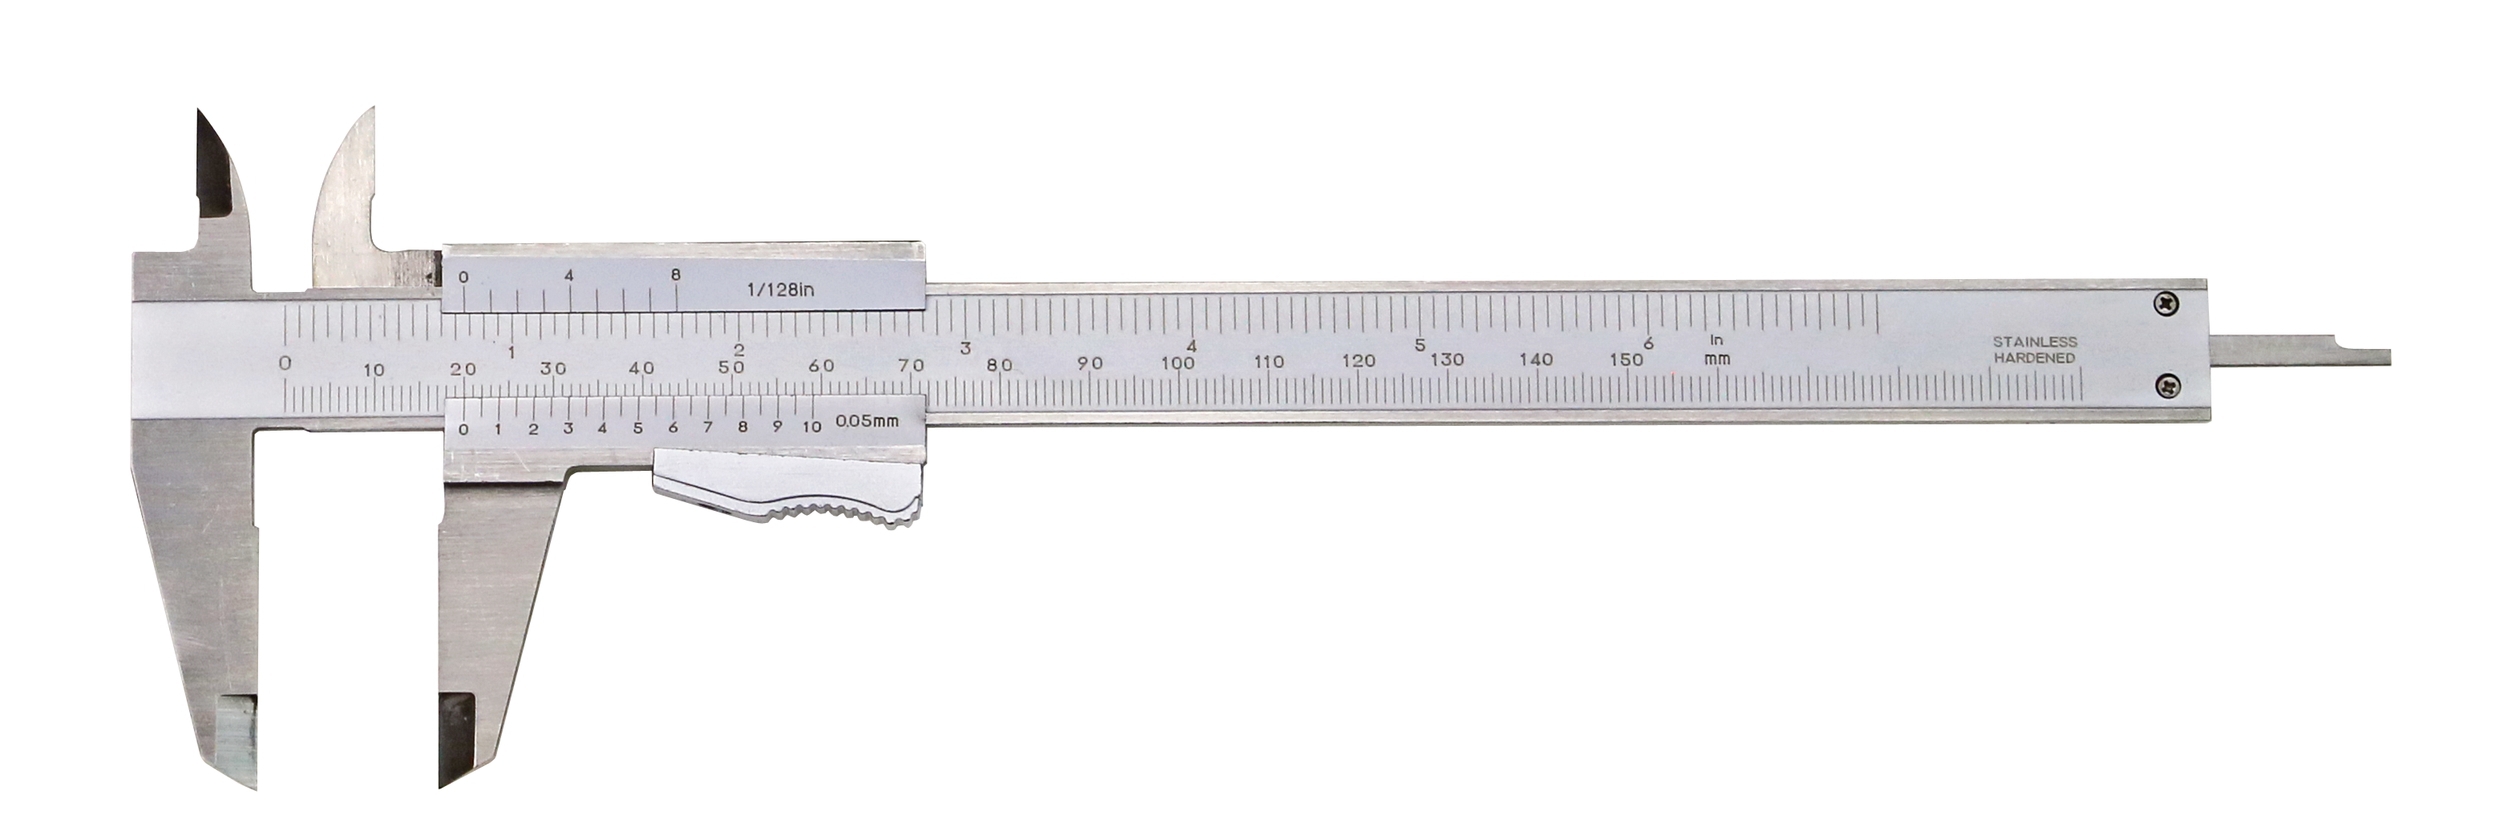 Taschen-Messschieber 150 x 0,05 mm DIN 862 INOX Momentfeststellung mit Kalibrierschein